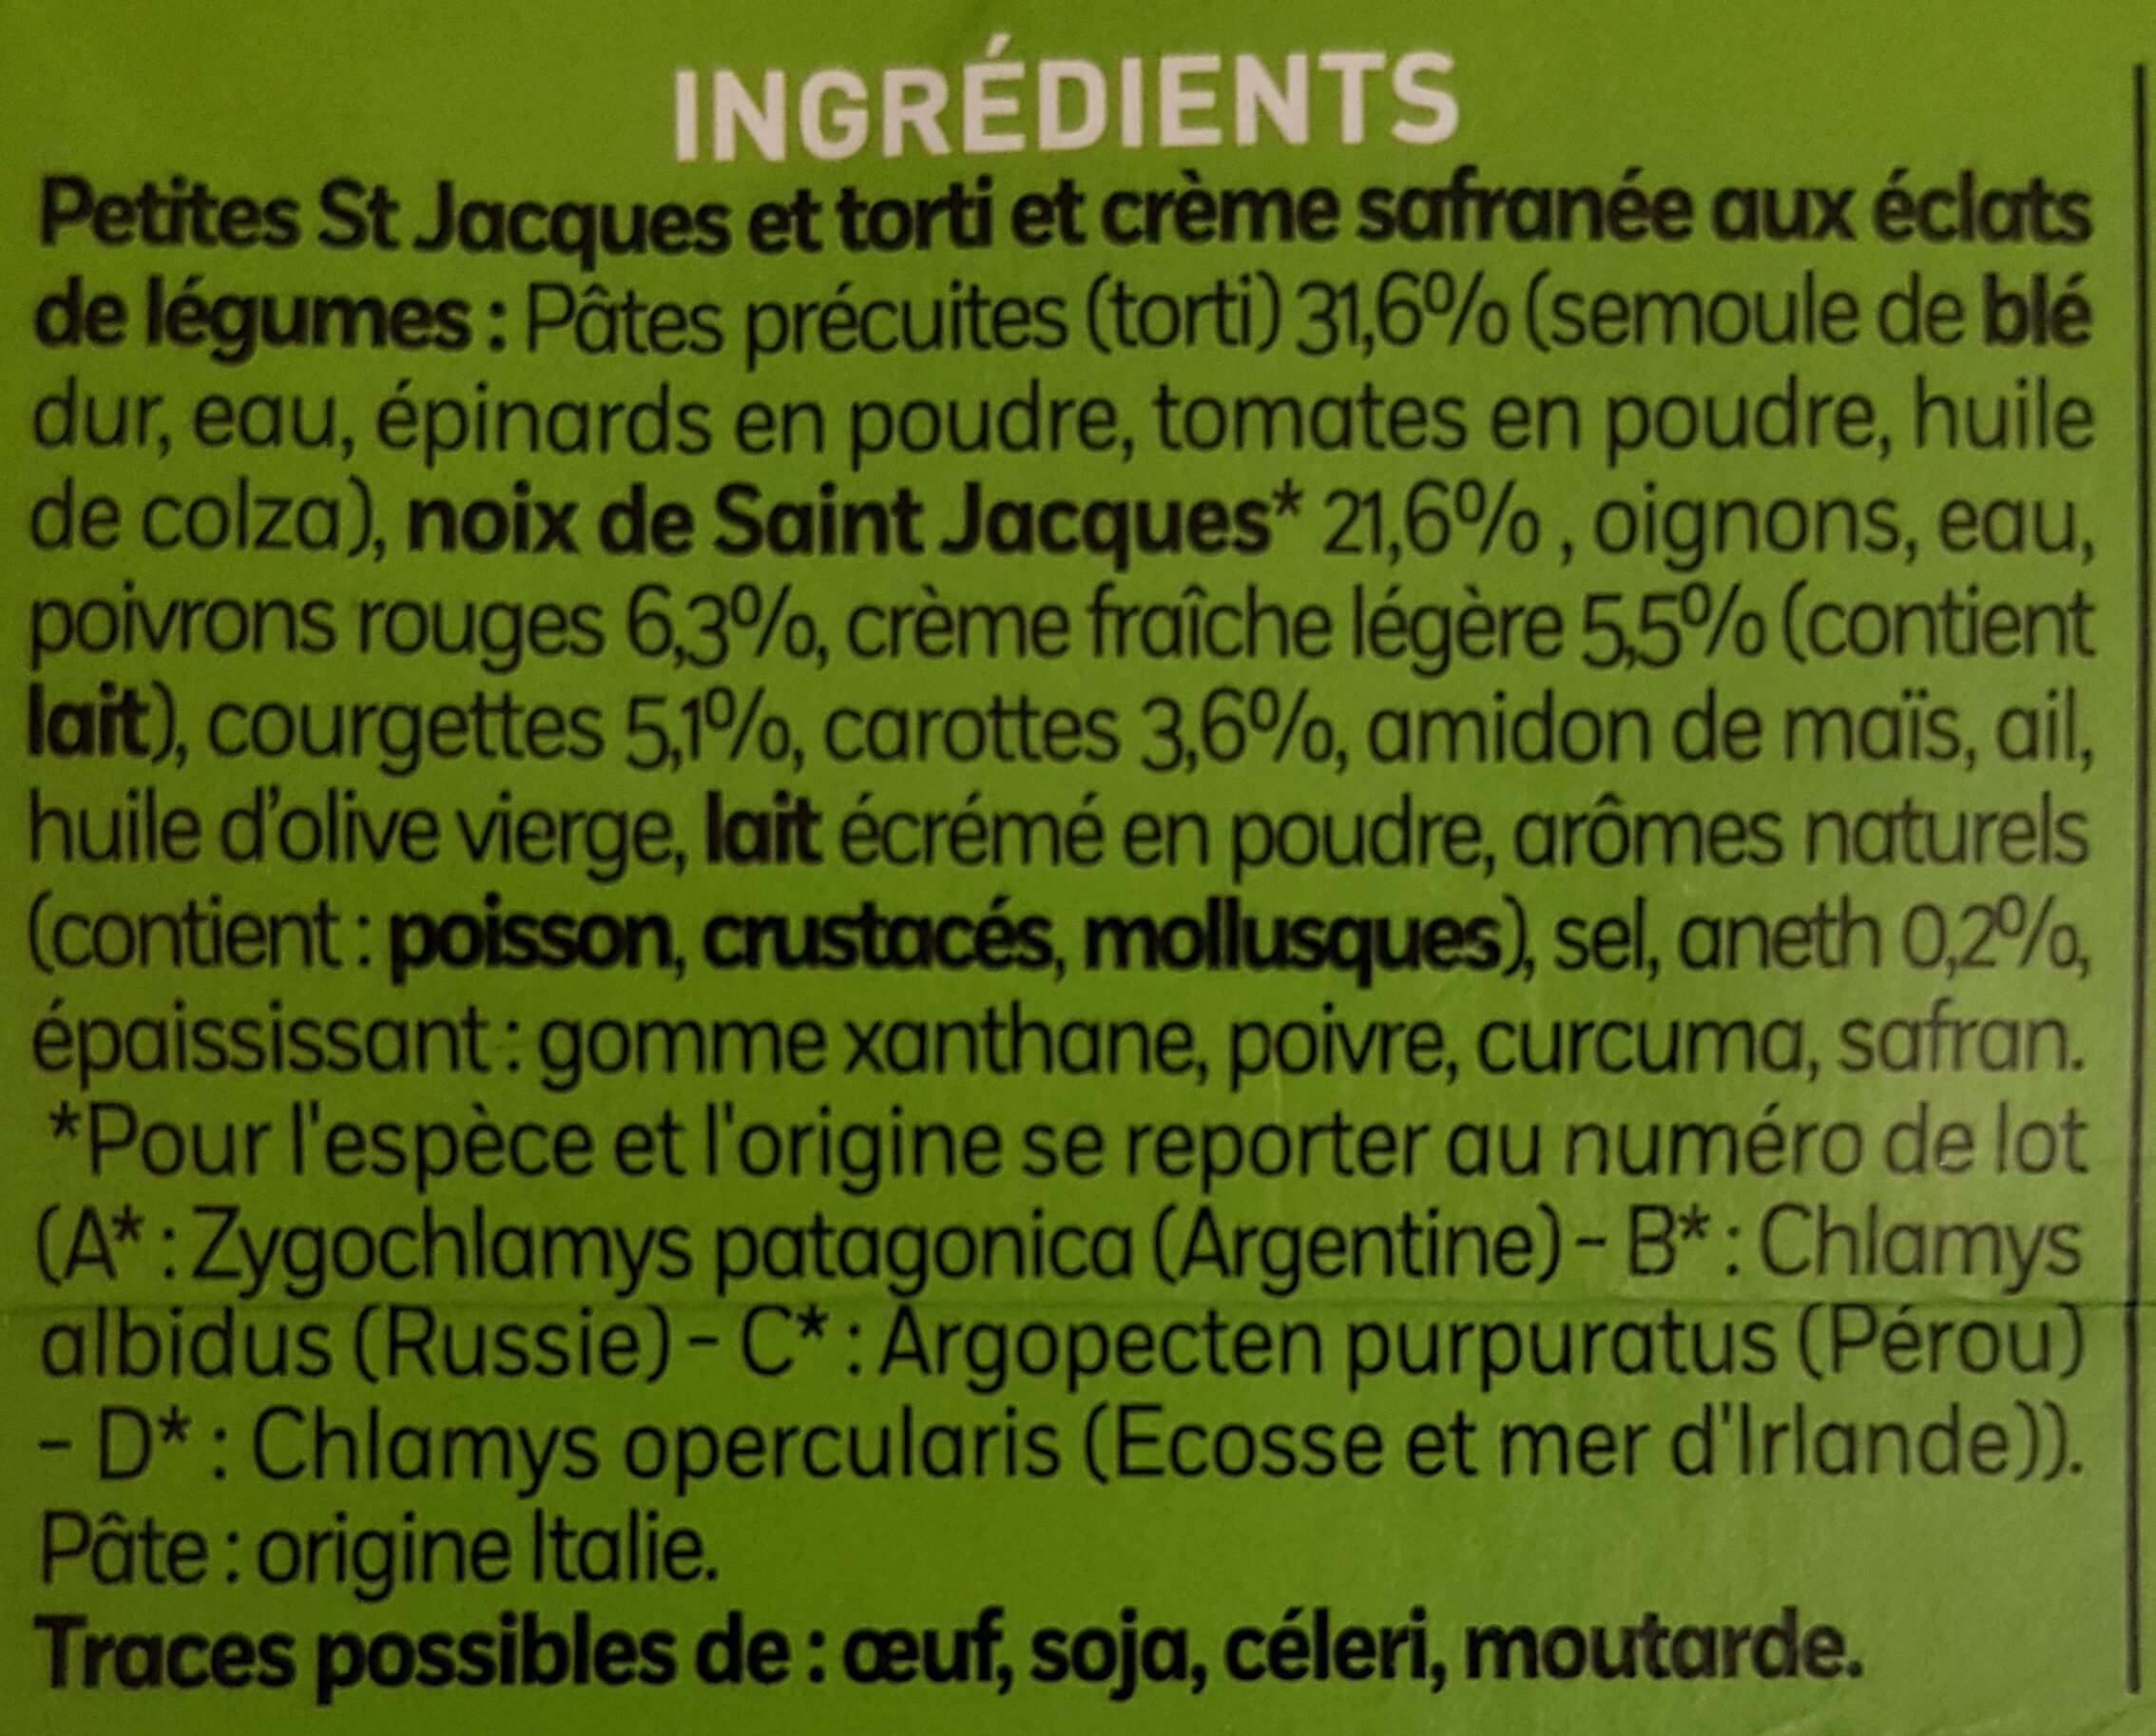 Petites St Jacques et torti - Ingrédients